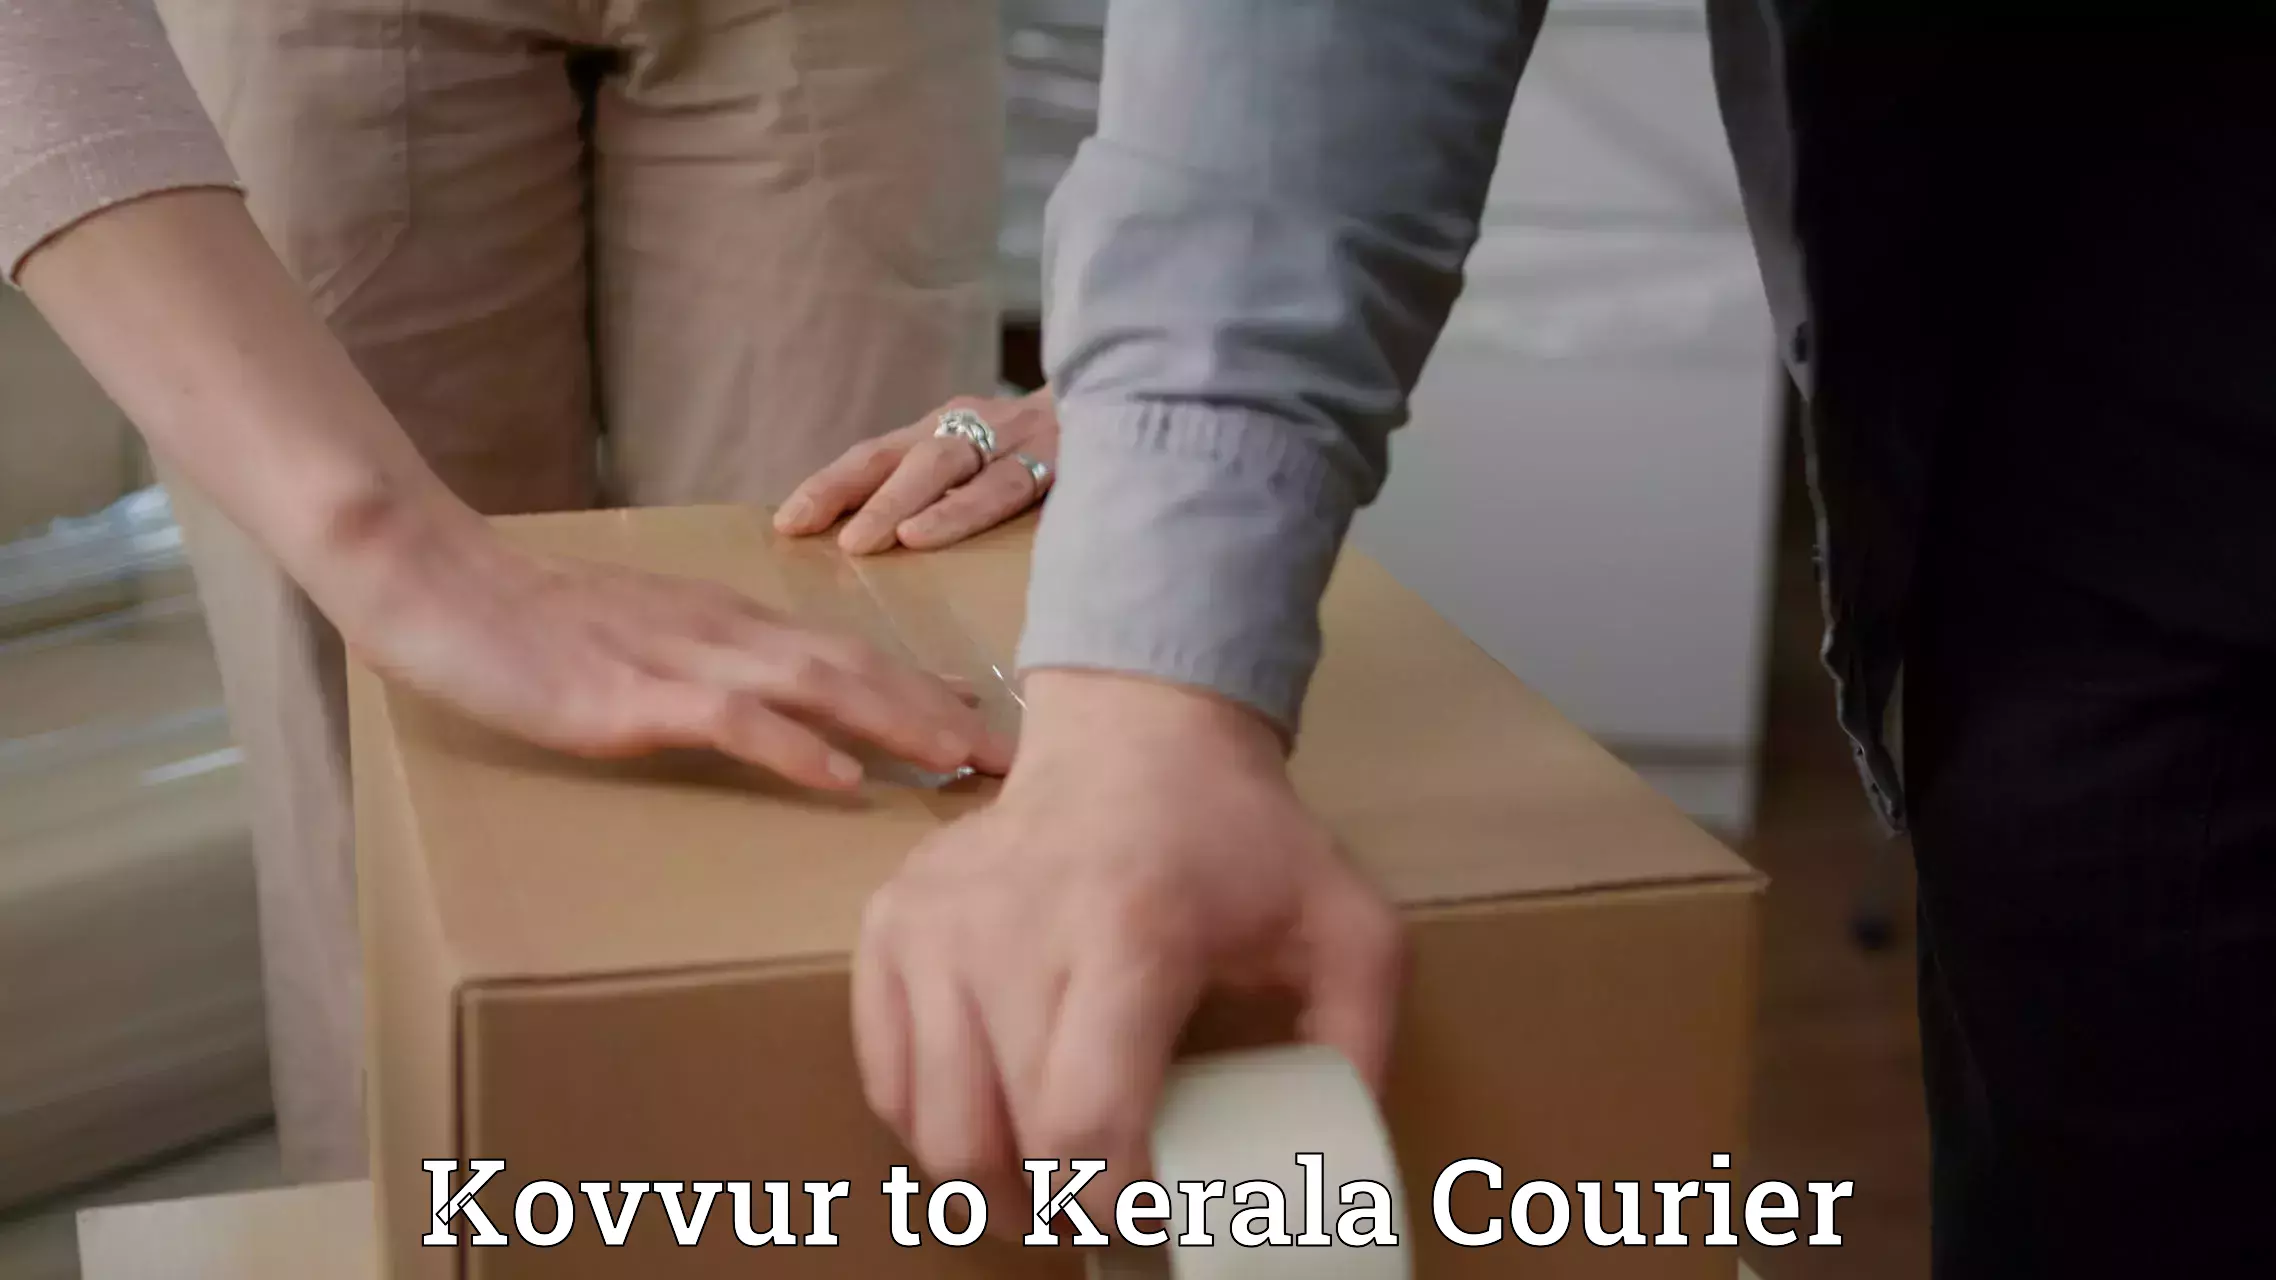 Reliable courier services Kovvur to Kallikkad